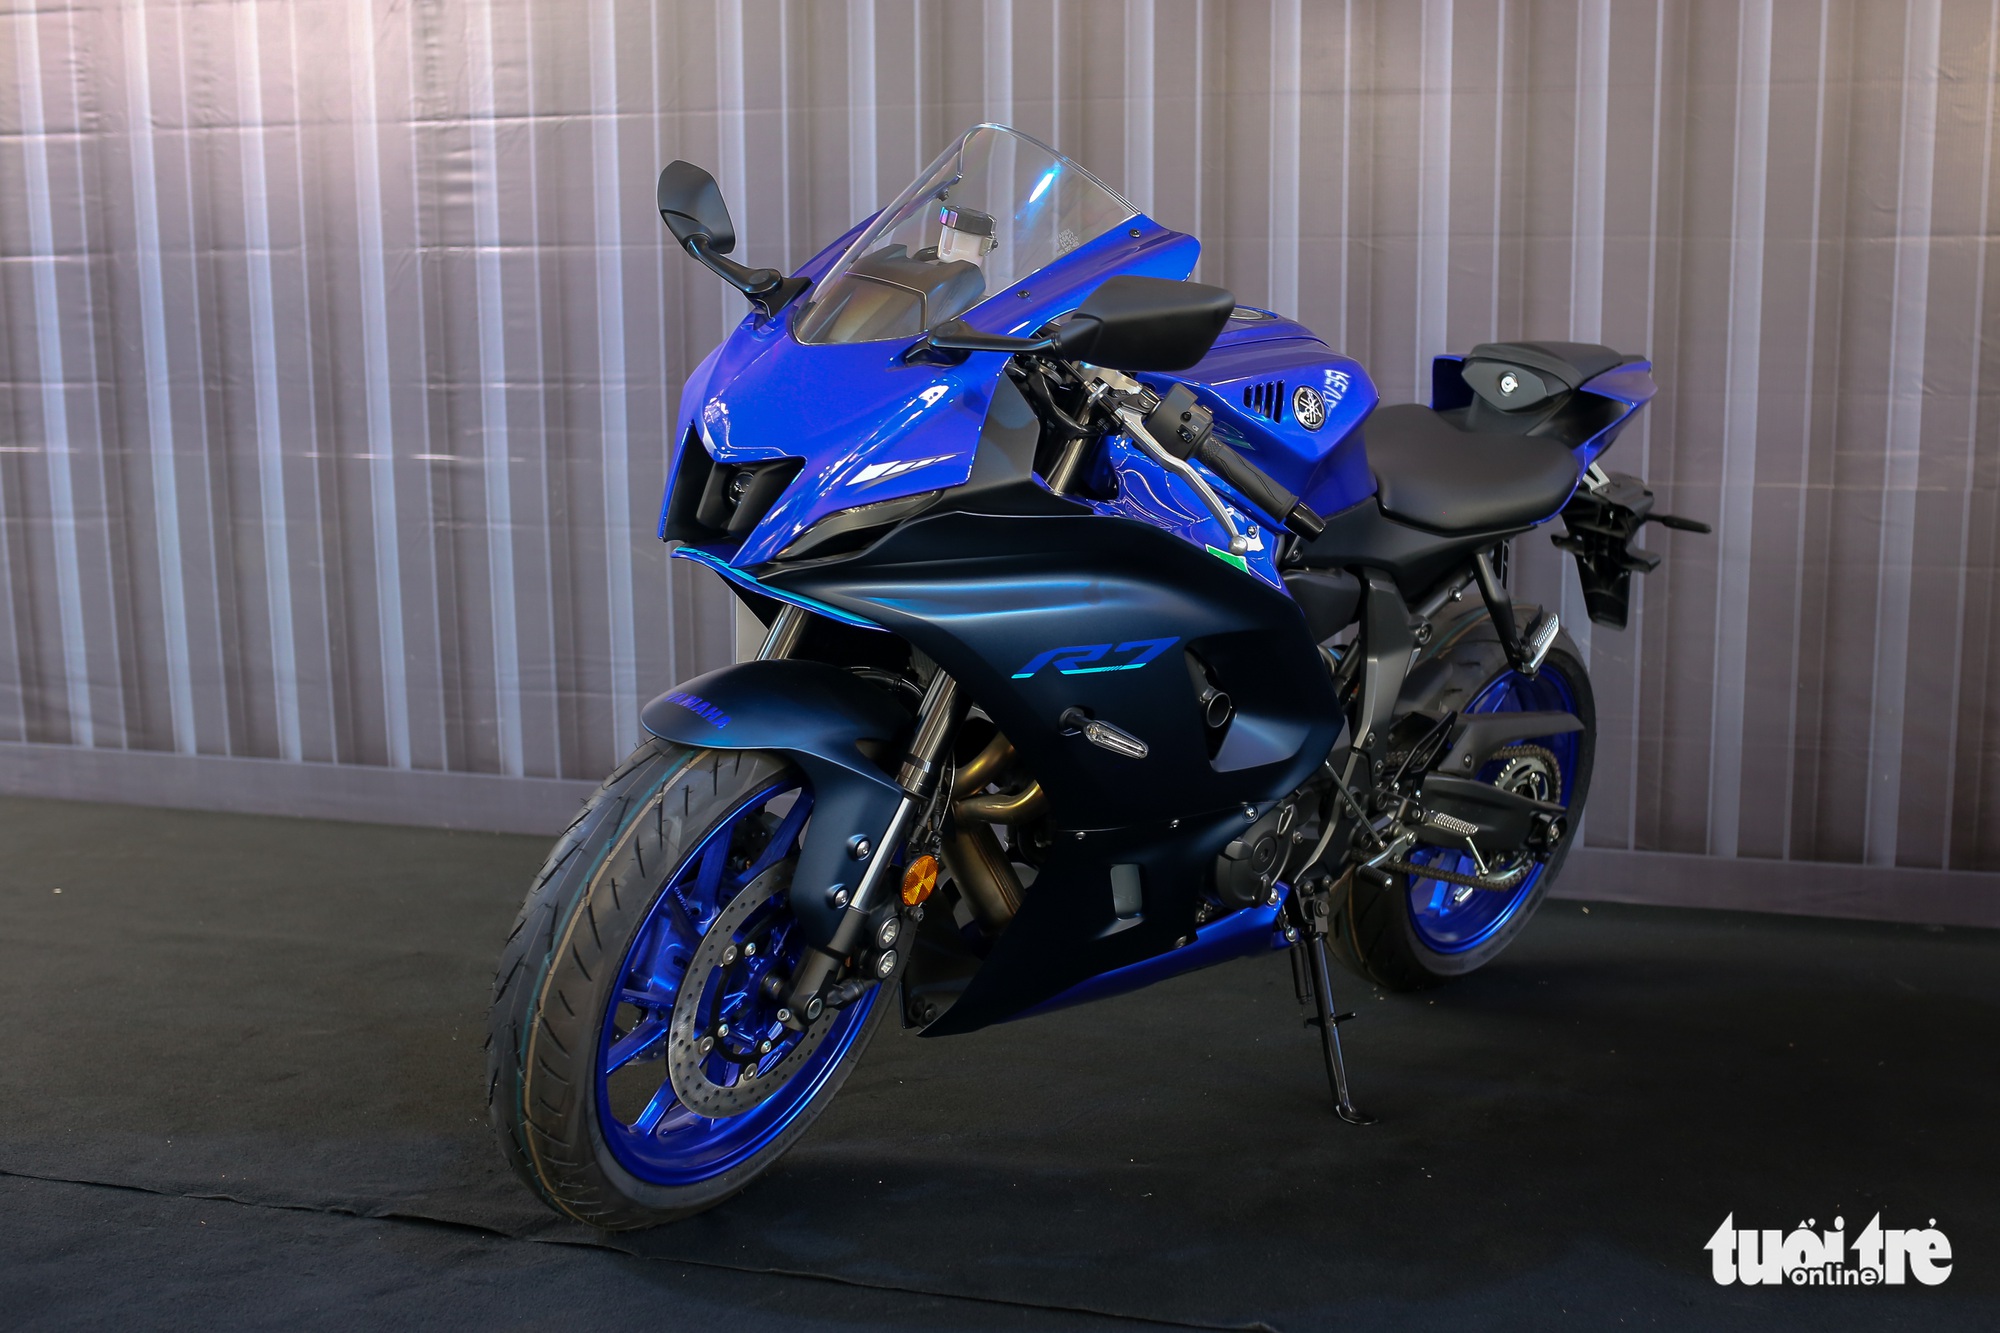 Yamaha YZF-R7 - Sportbike tầm trung giá 269 triệu đồng, thay thế 'huyền thoại' R6 - Ảnh 1.